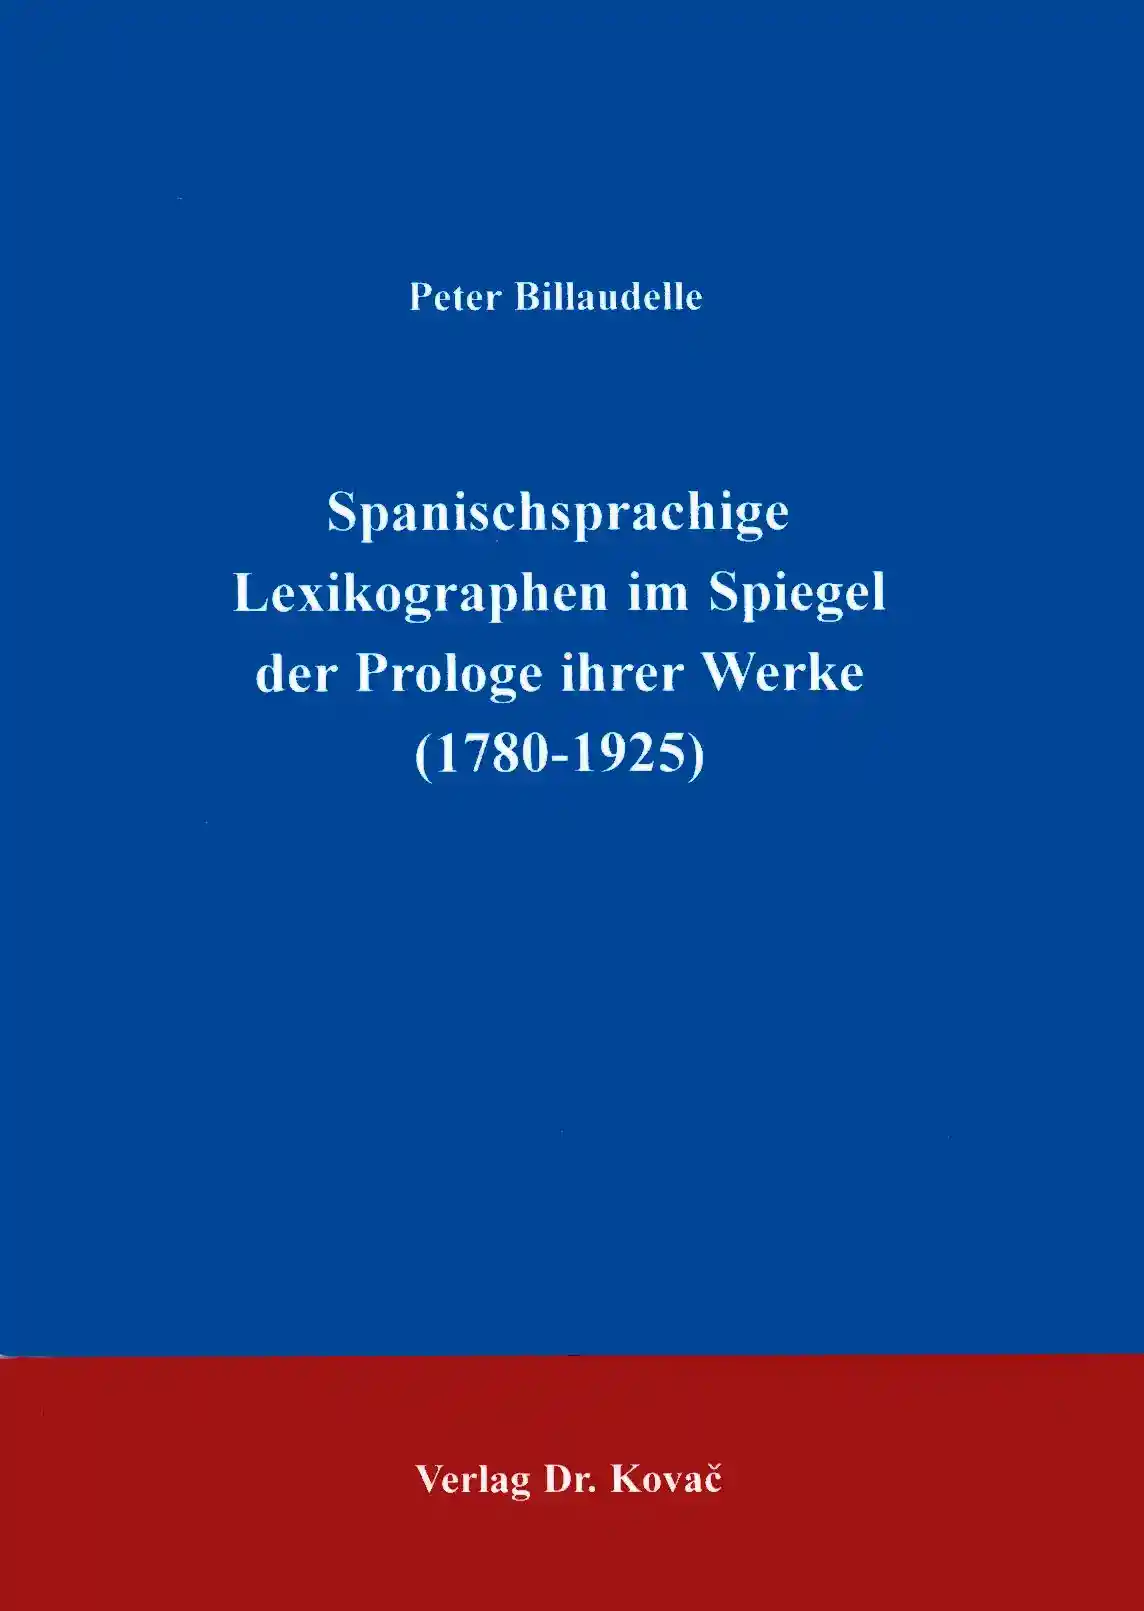 : Spanischsprachige Lexikographen im Spiegel der Prologe ihrer Werke (1780-1925)